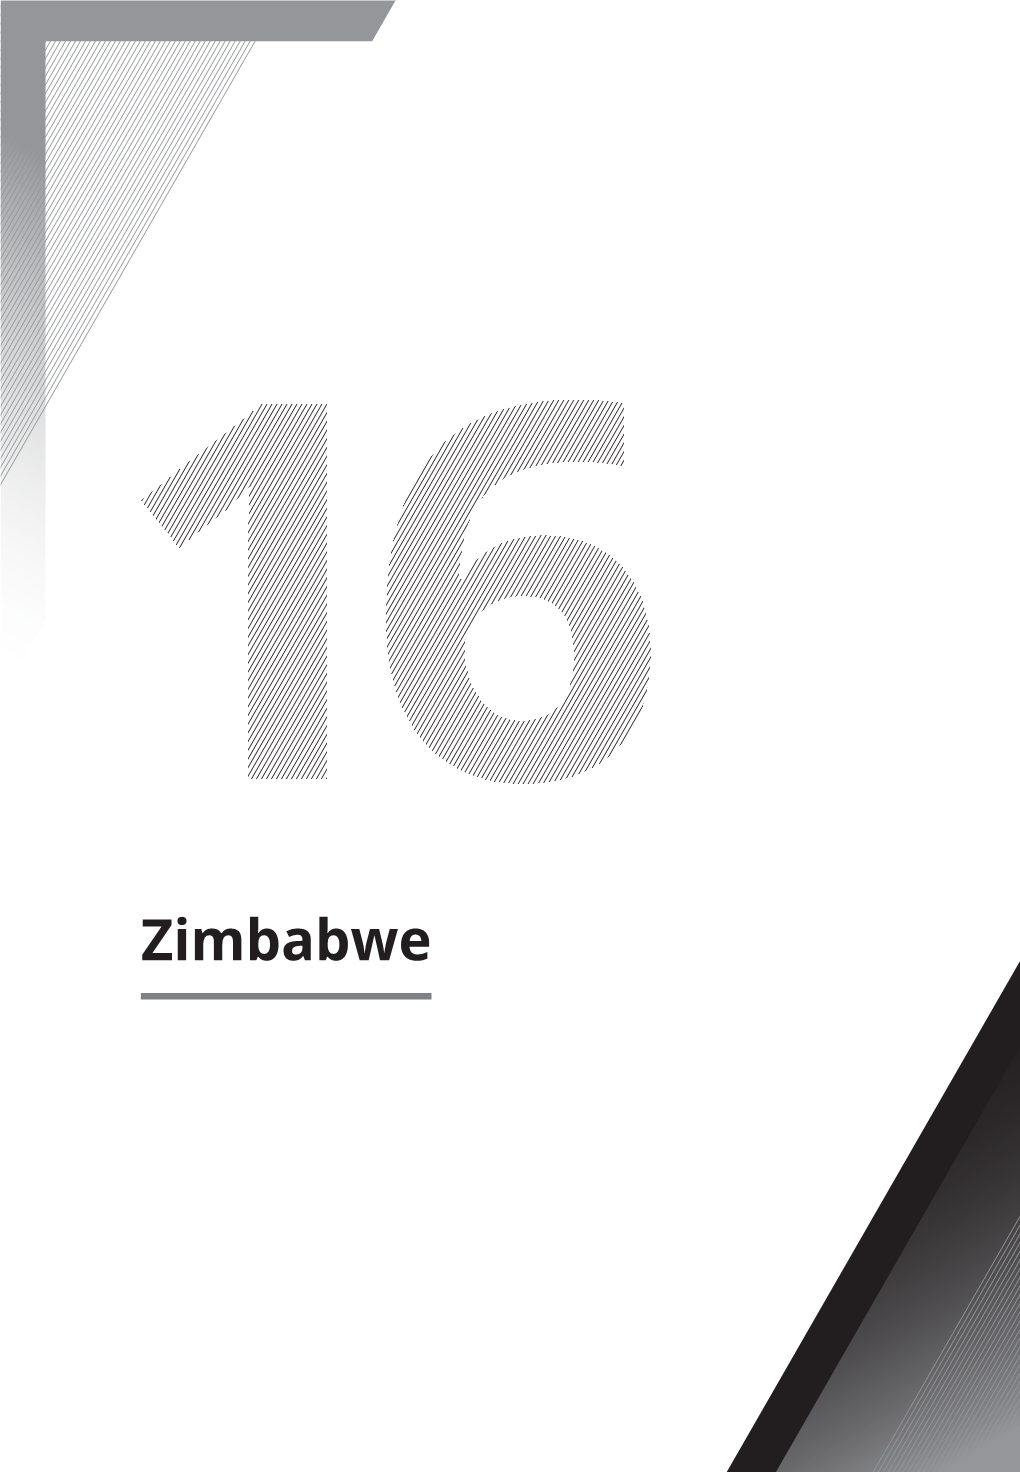 Zimbabwe 1 Introduction